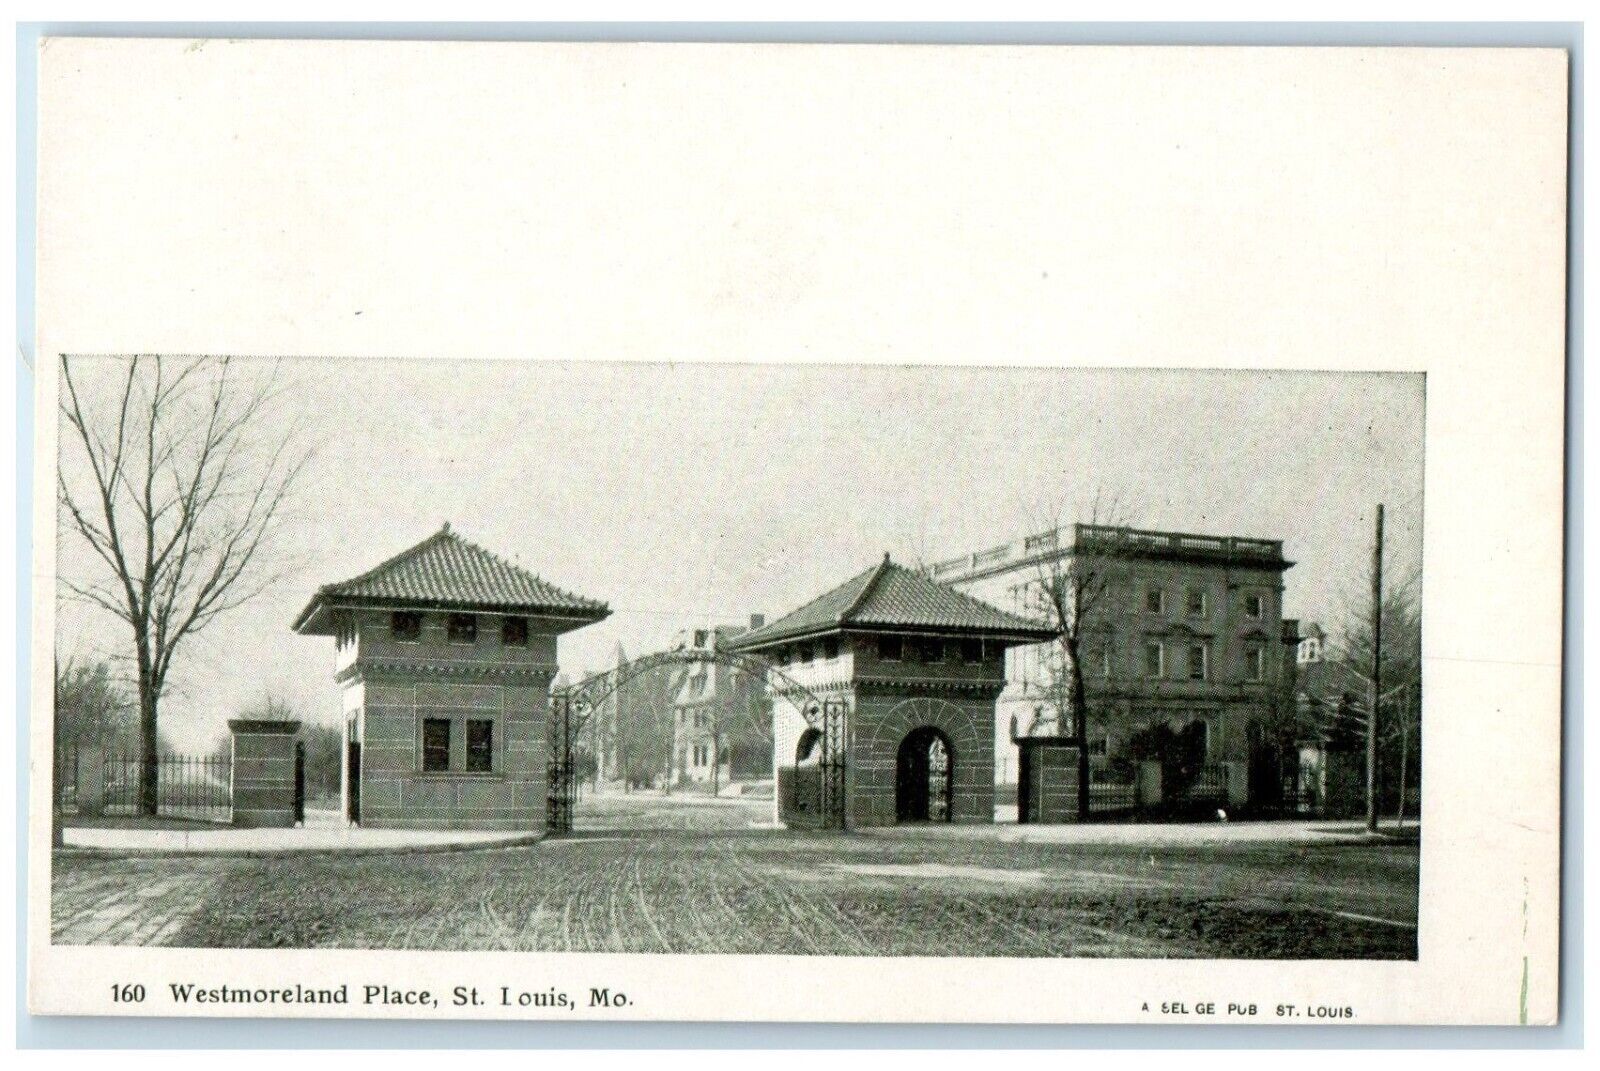 St. Louis Missouri Postcard Westmoreland Place Exterior c1905 Vintage Antique